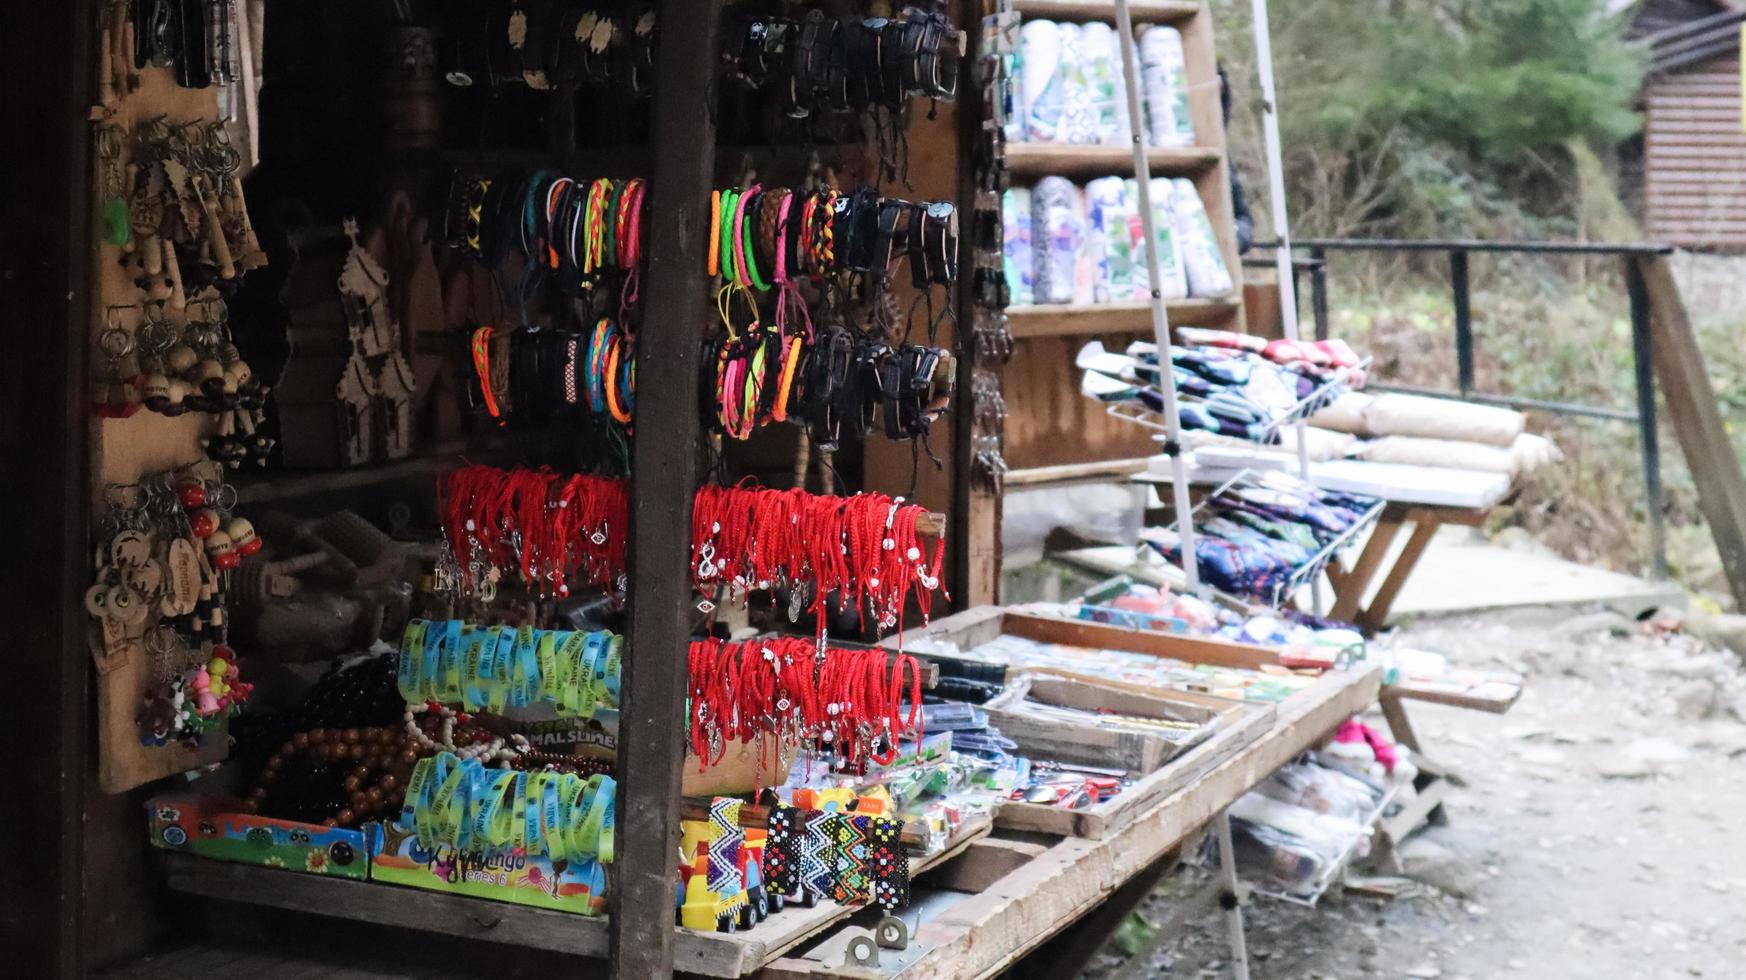 marché de souvenirs à Yaremche avec des vêtements traditionnels des Carpates faits à la main, des herbes et des outils en bois. textiles ukrainiens, chaussettes tricotées, gilets, chapeaux. ukraine, yaremche - 20 novembre 2019 photo